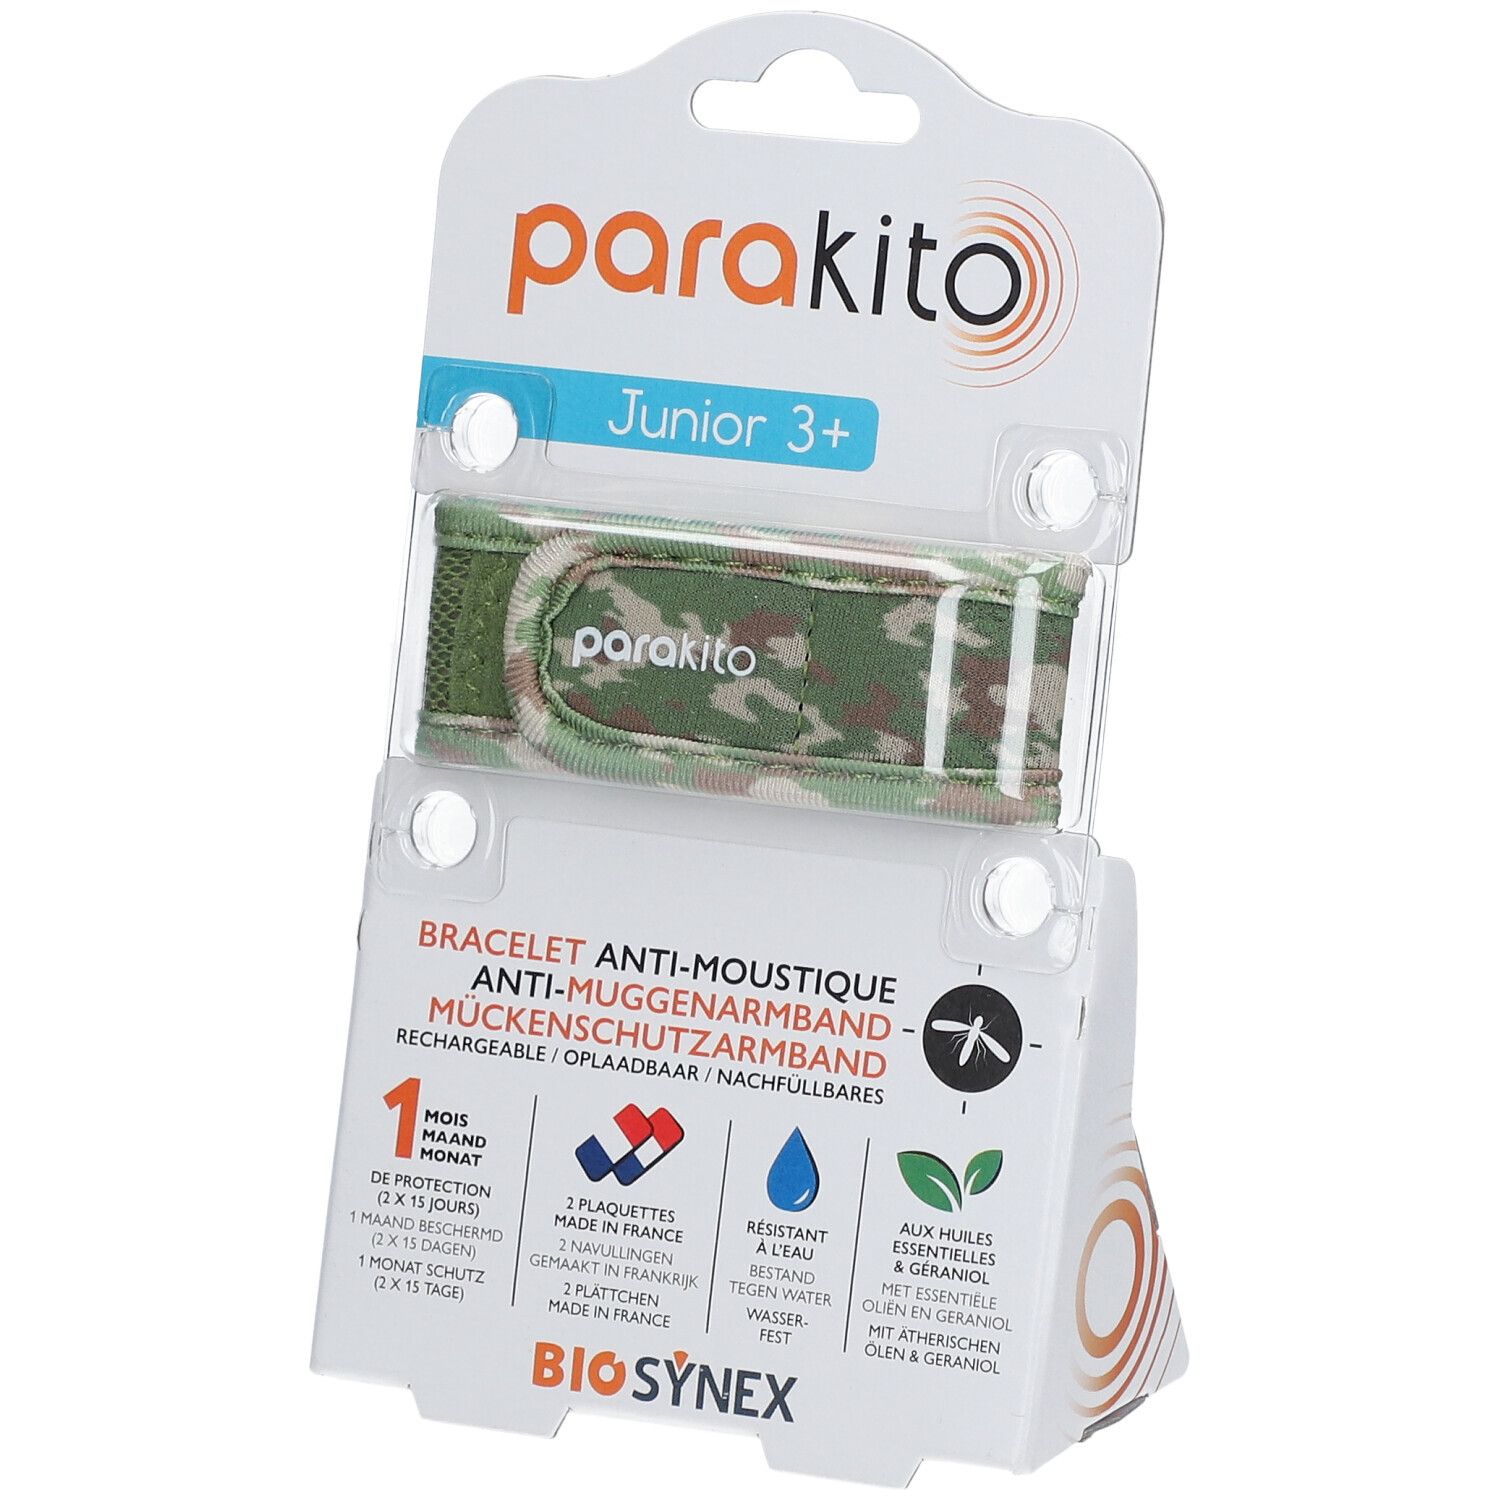 ParaKito Bracelet Anti-Moustiques Junior 3+ Camouflage 1 bracelet(s)